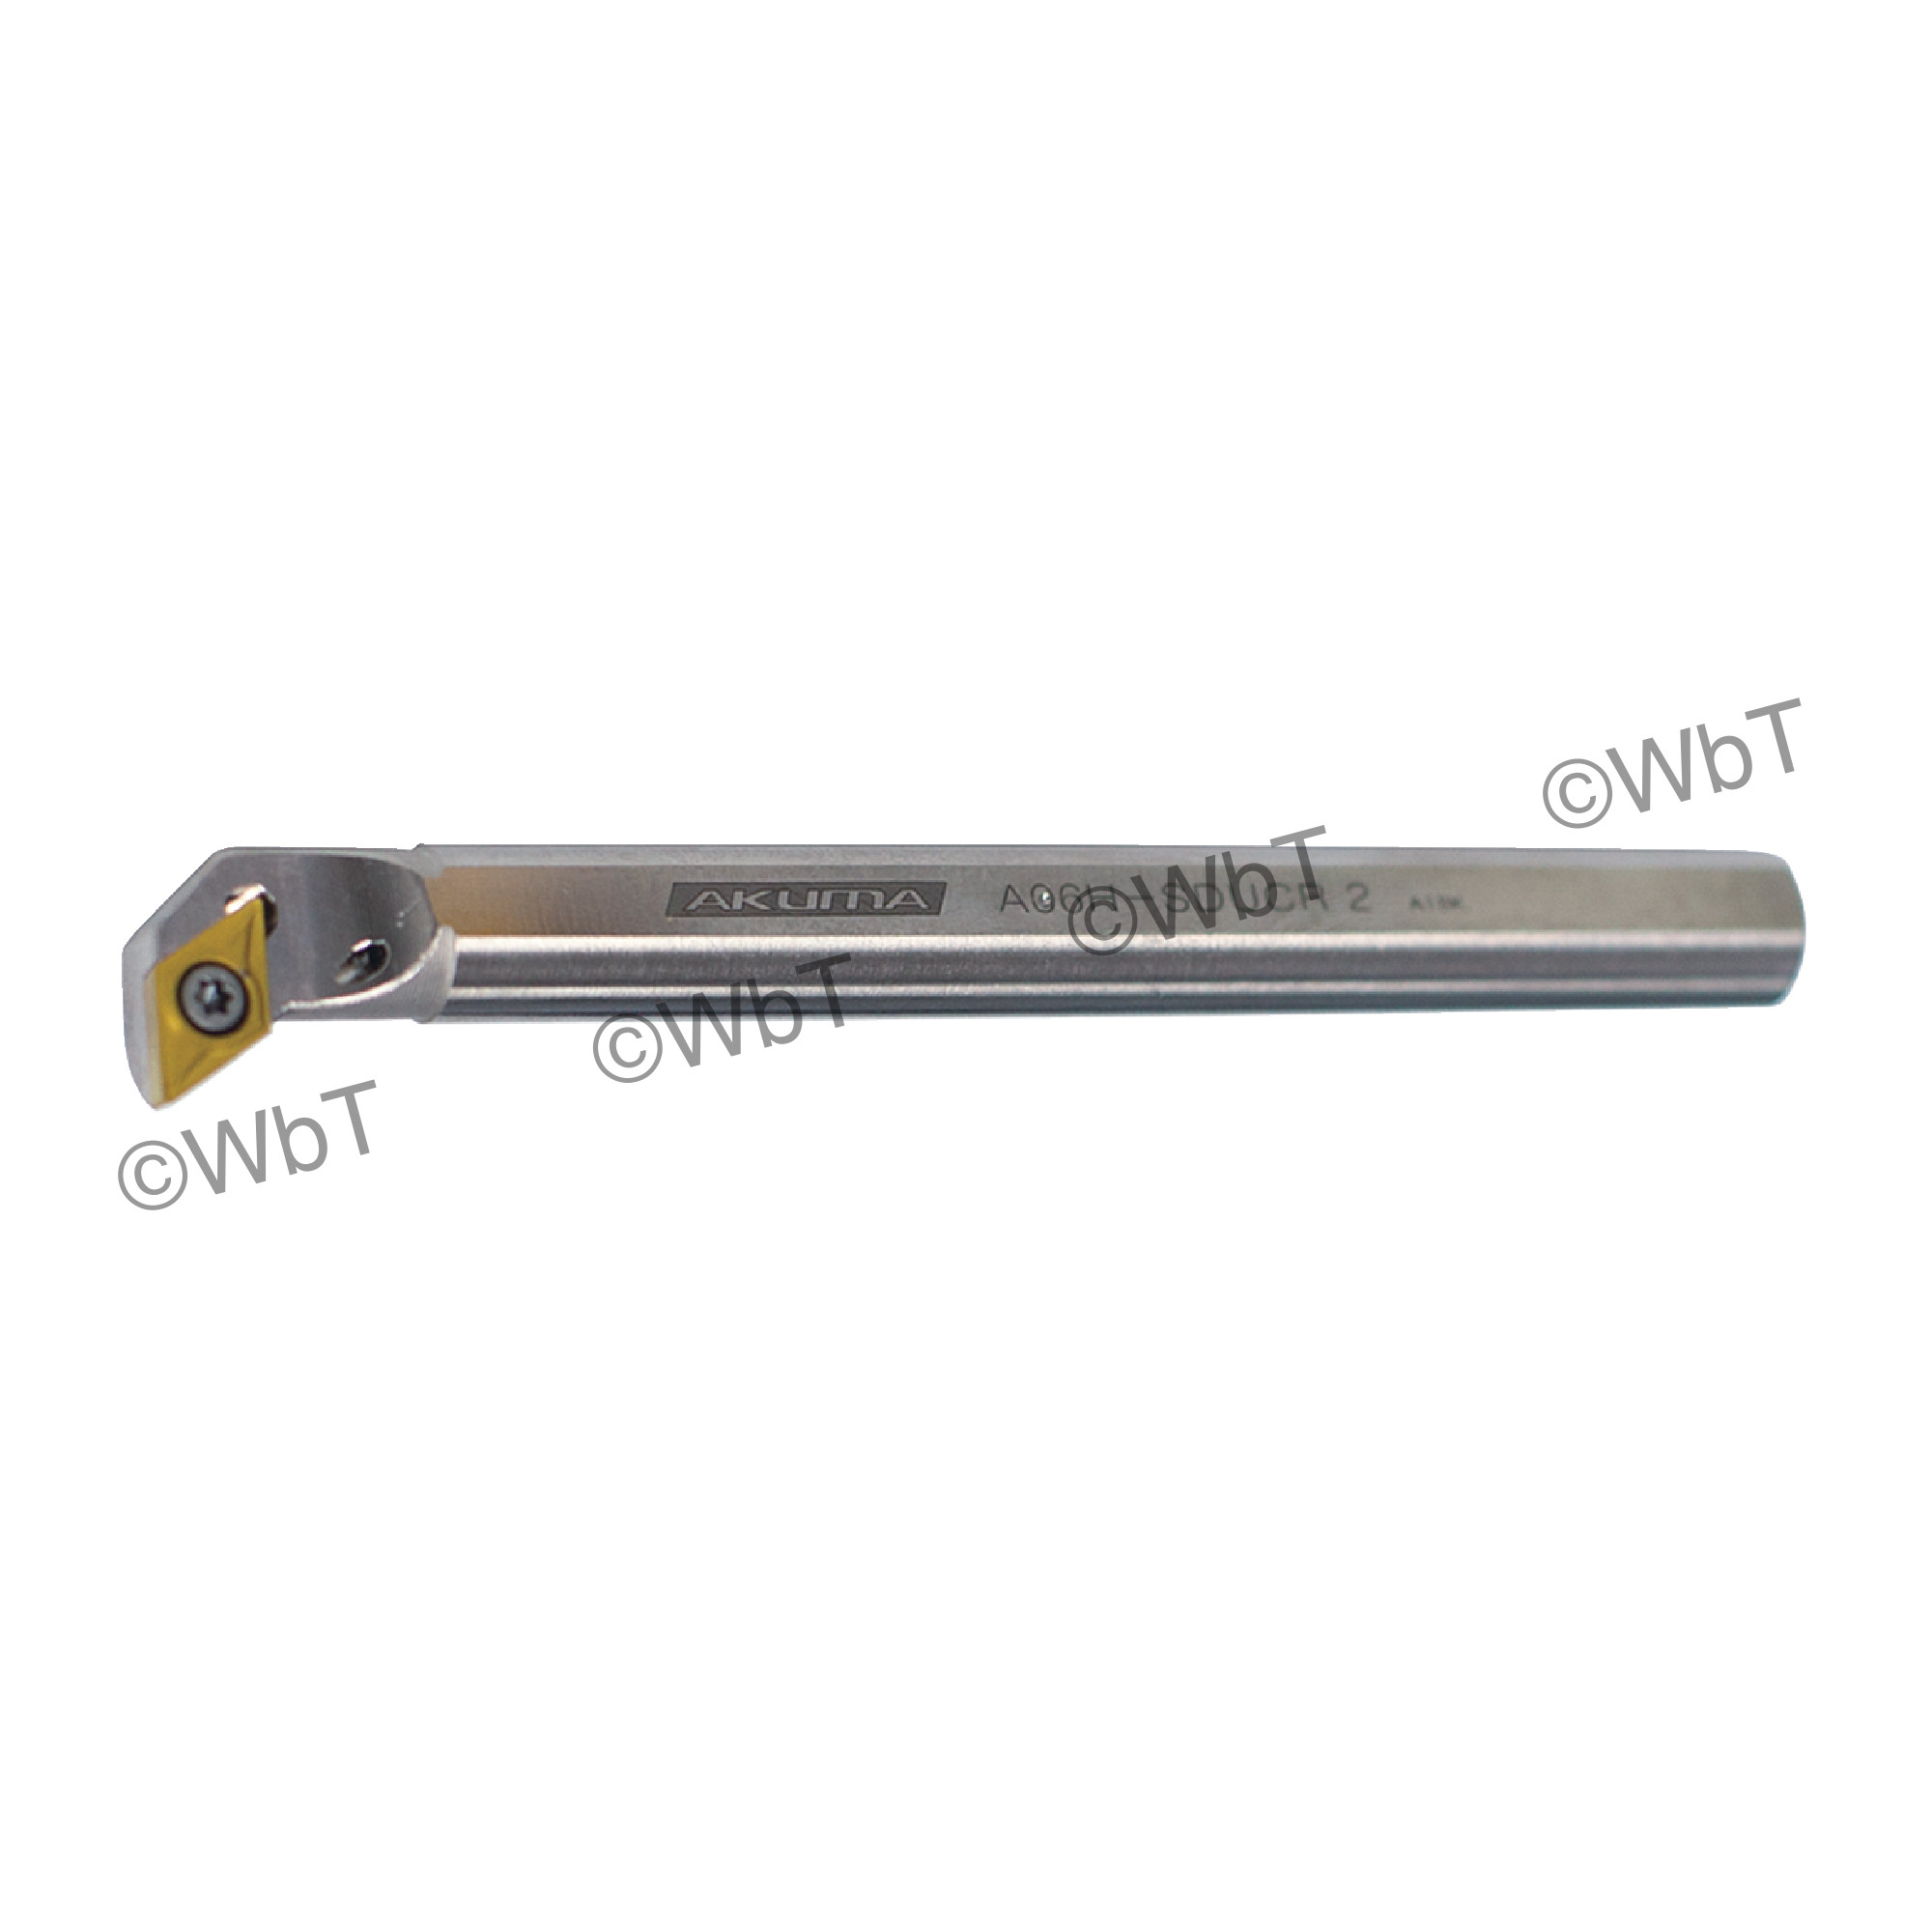 60 Angle Single End Carbide Boring Bar Engraver 3/8 Shank Dia 